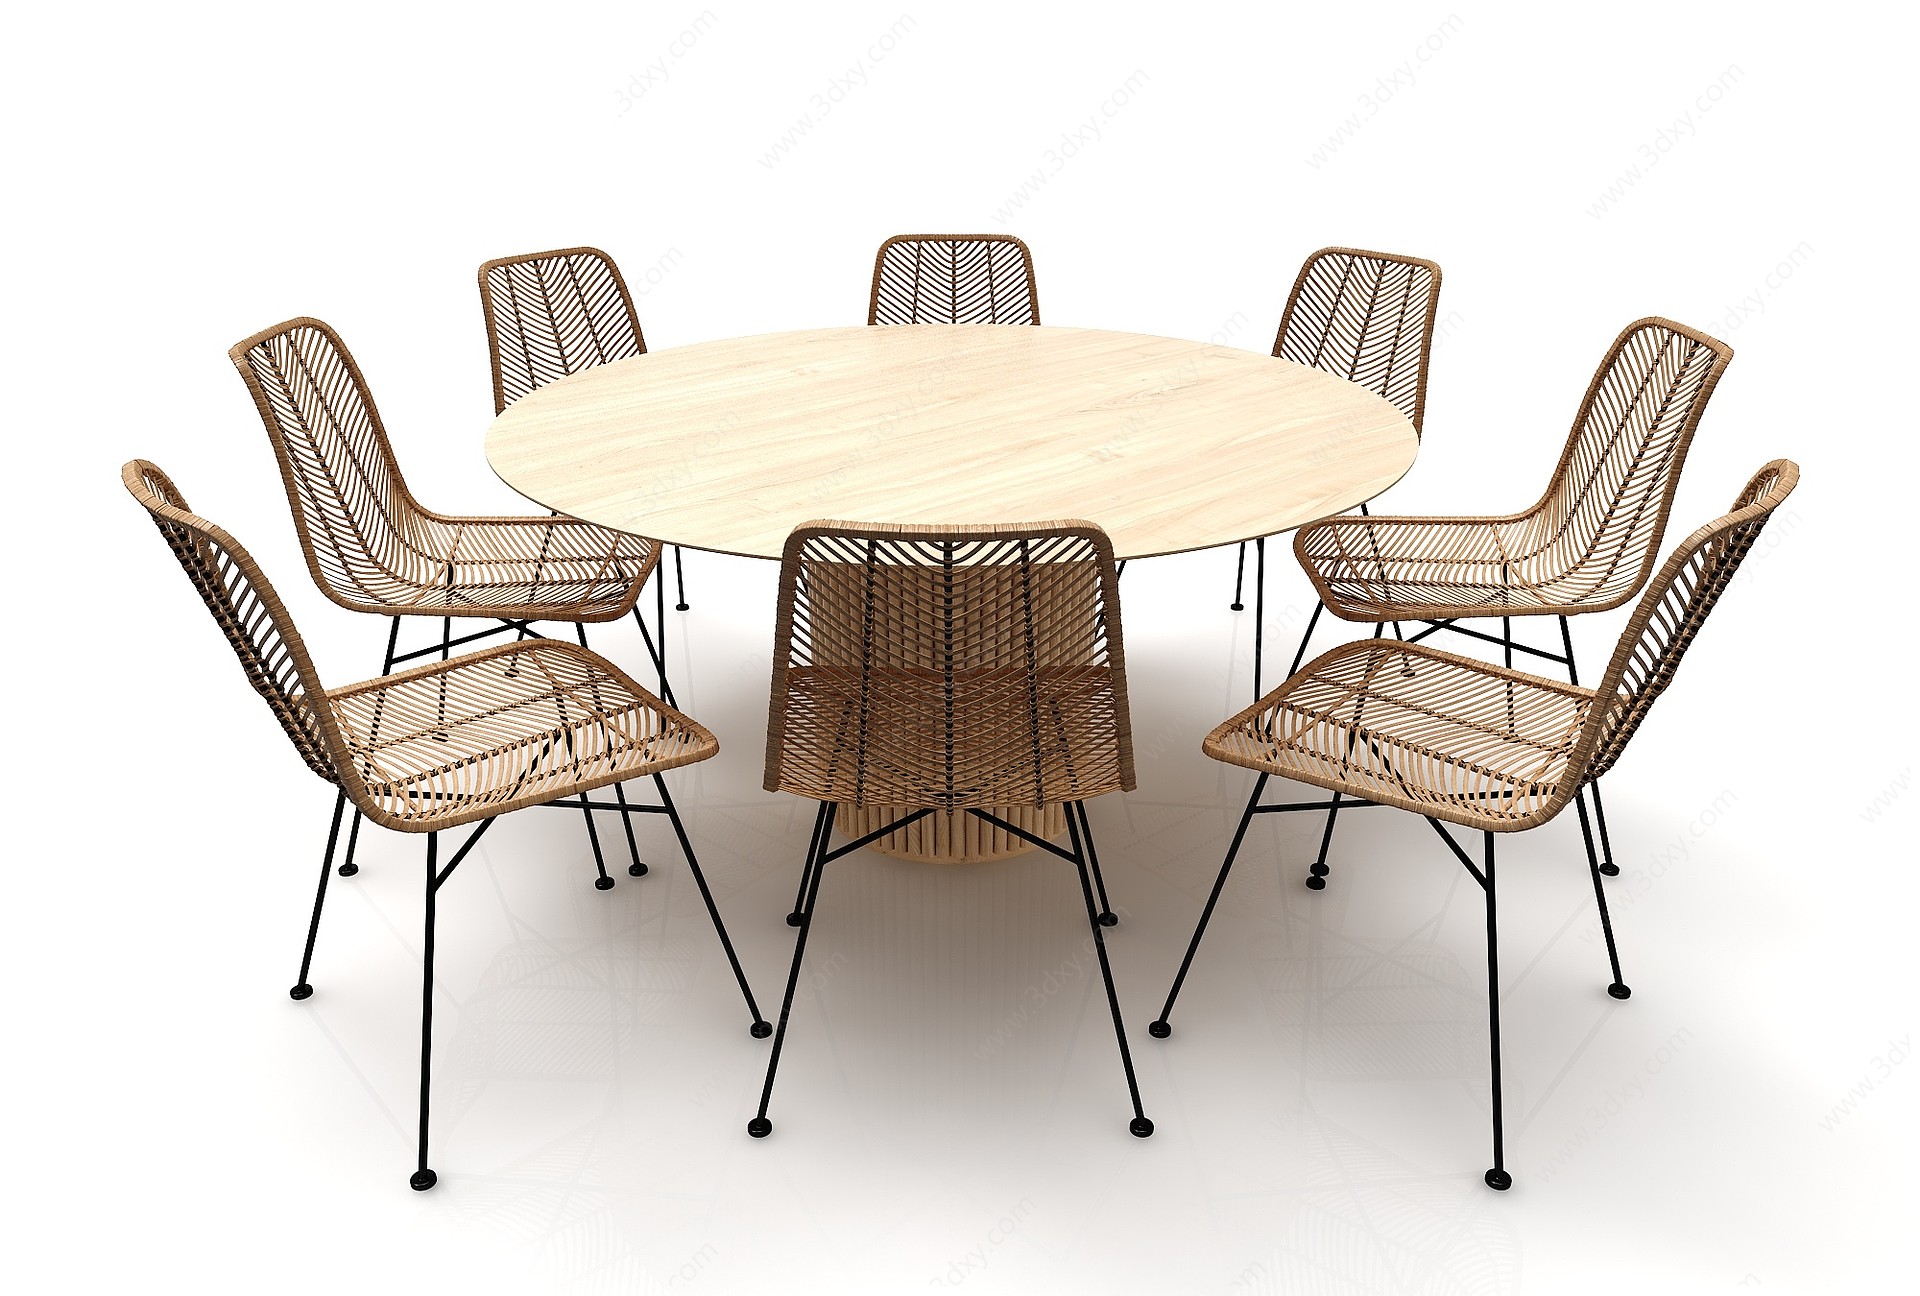 现代风格圆形餐桌3D模型